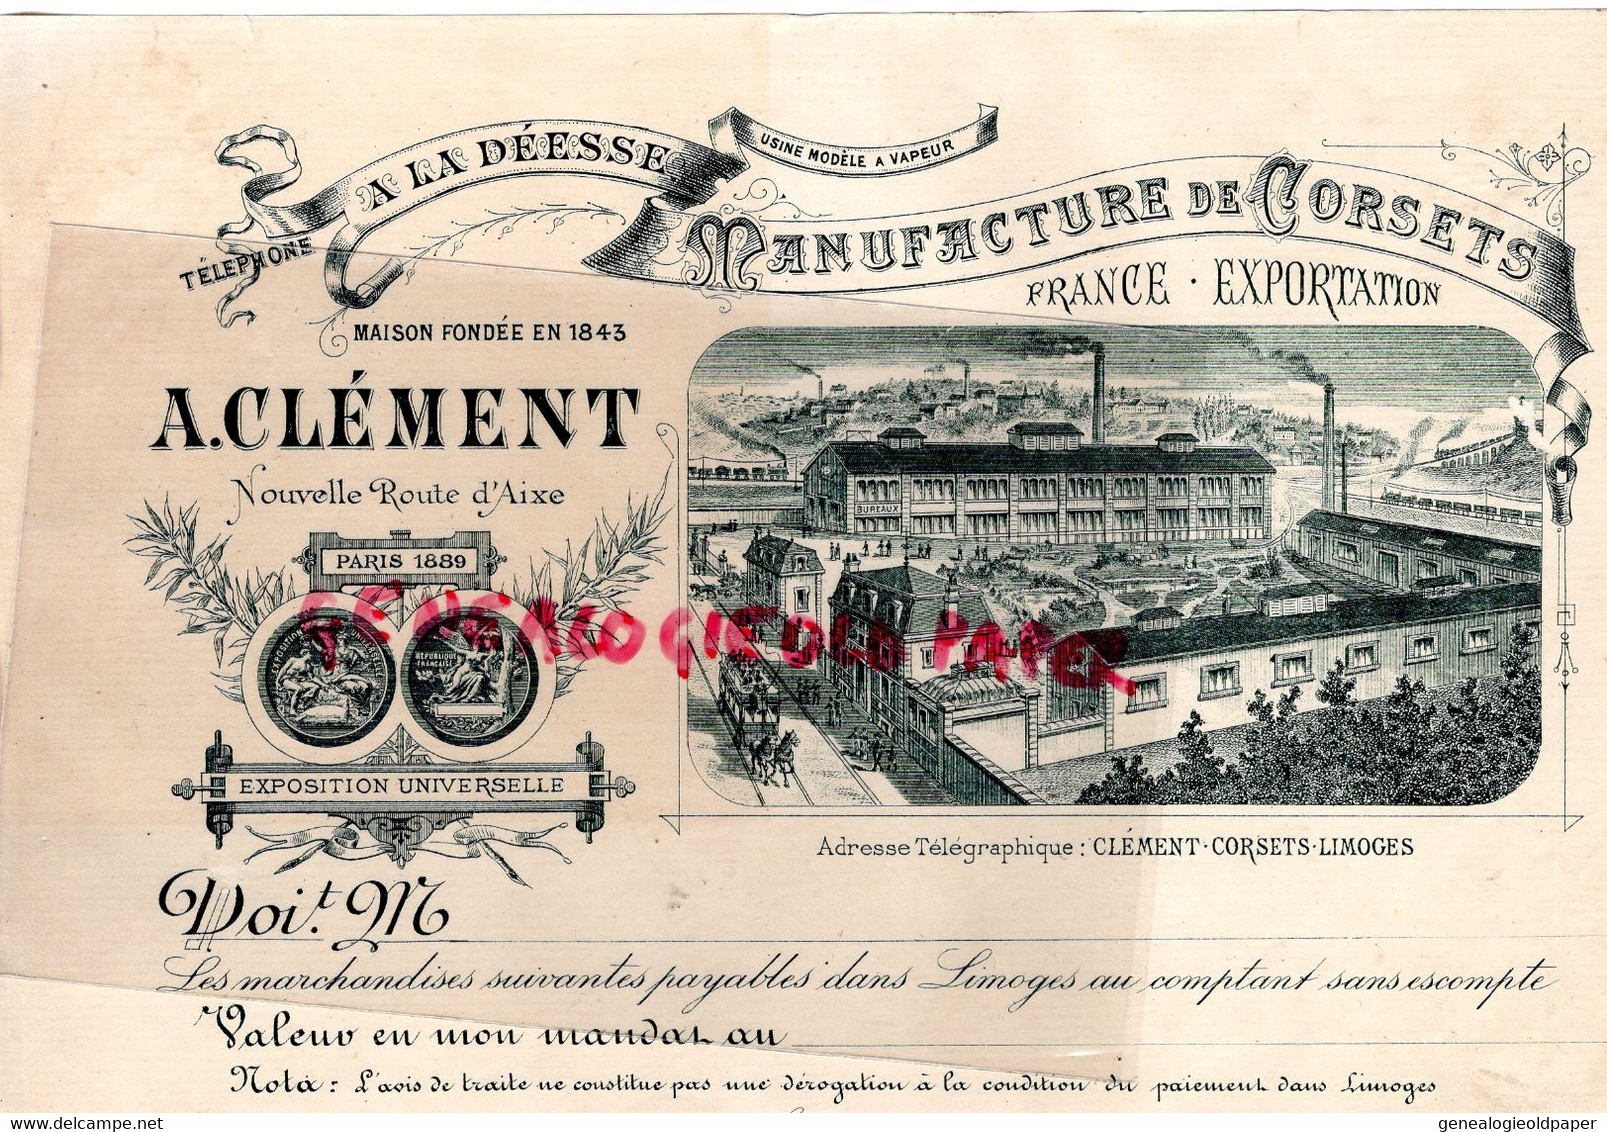 87 - LIMOGES - RARE FACTURE MANUFACTURE LINGERIE -CORSETS " A LA DEESSE " A. CLEMENT NOUVELLE ROUTE D' AIXE - PARIS 1889 - Textile & Clothing